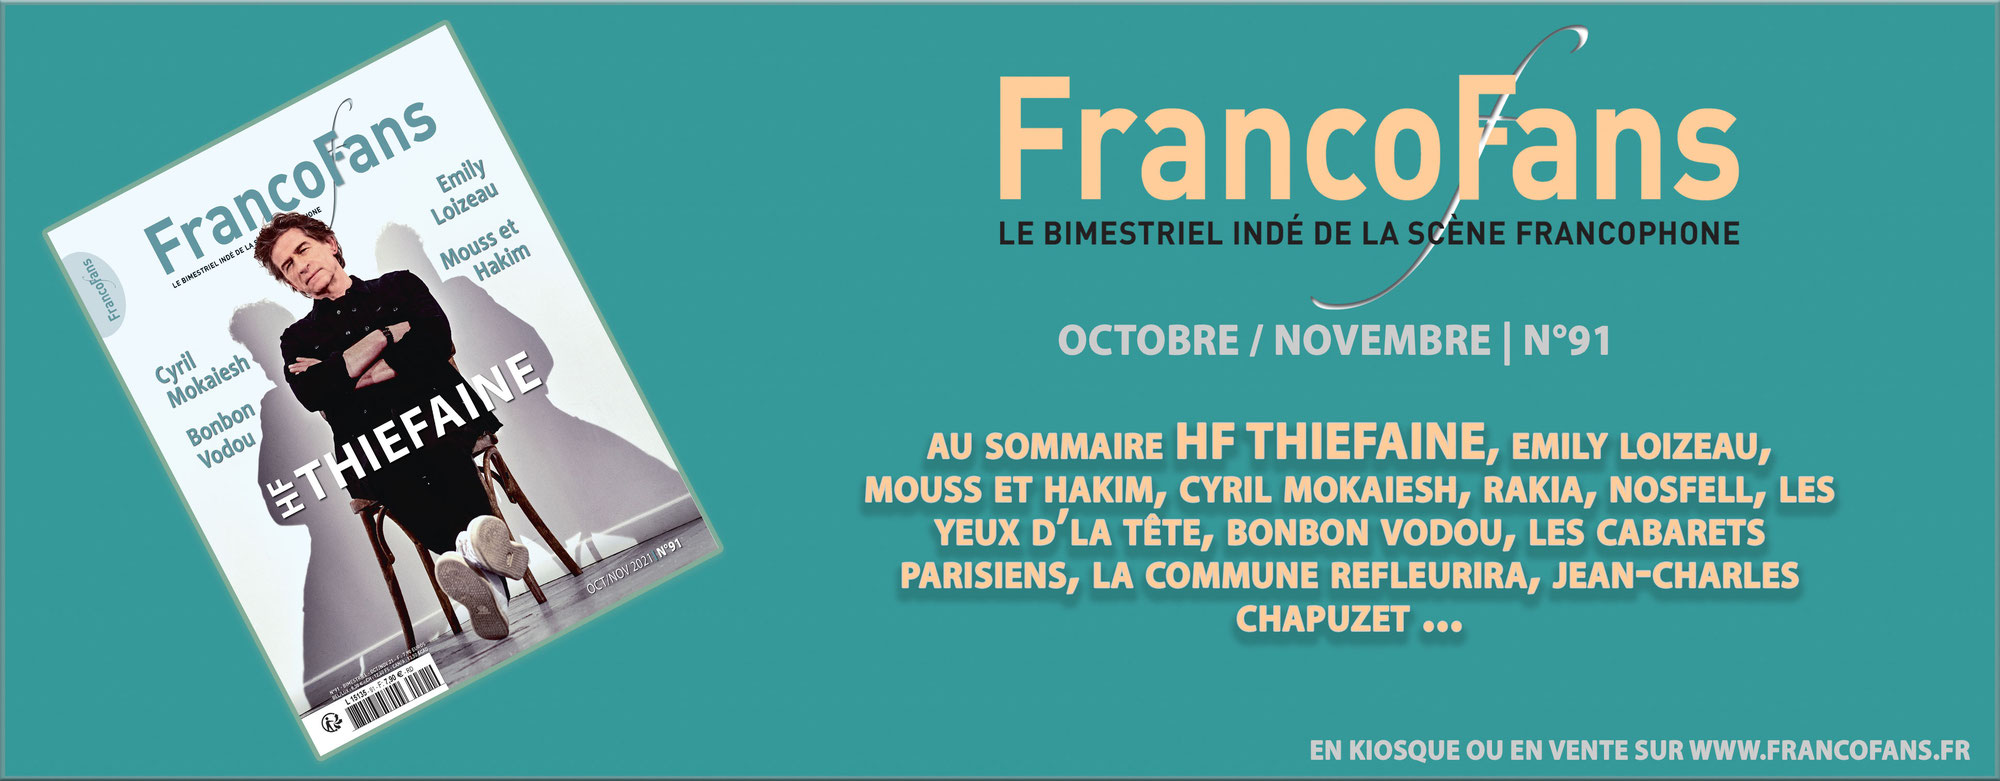 FrancoFans 91 d'octobre / novembre  dispo !